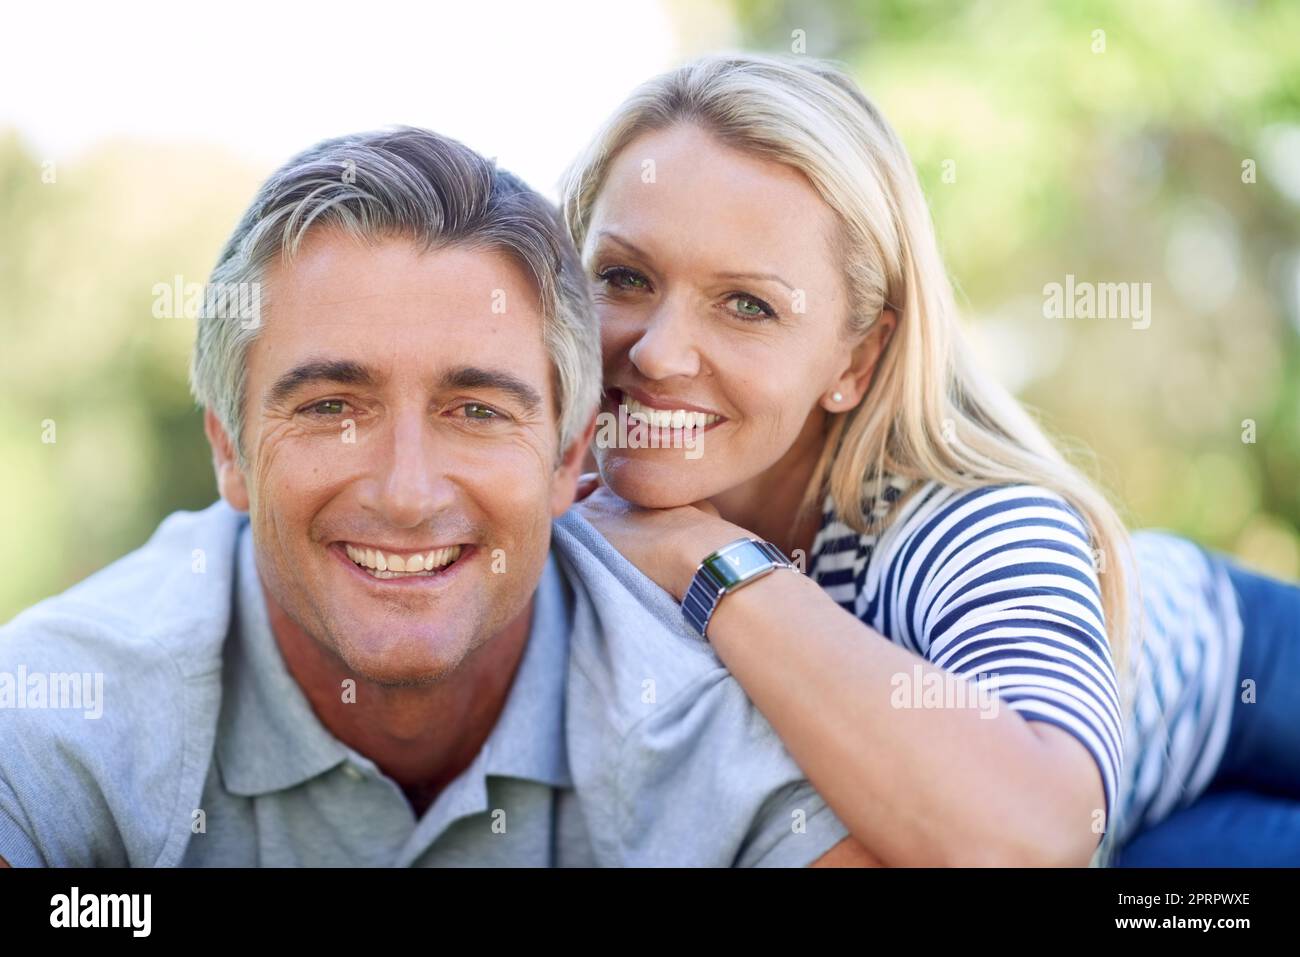 Romantisme inspiré par la beauté natures. Portrait court d'un couple affectueux et mature dans le parc Banque D'Images